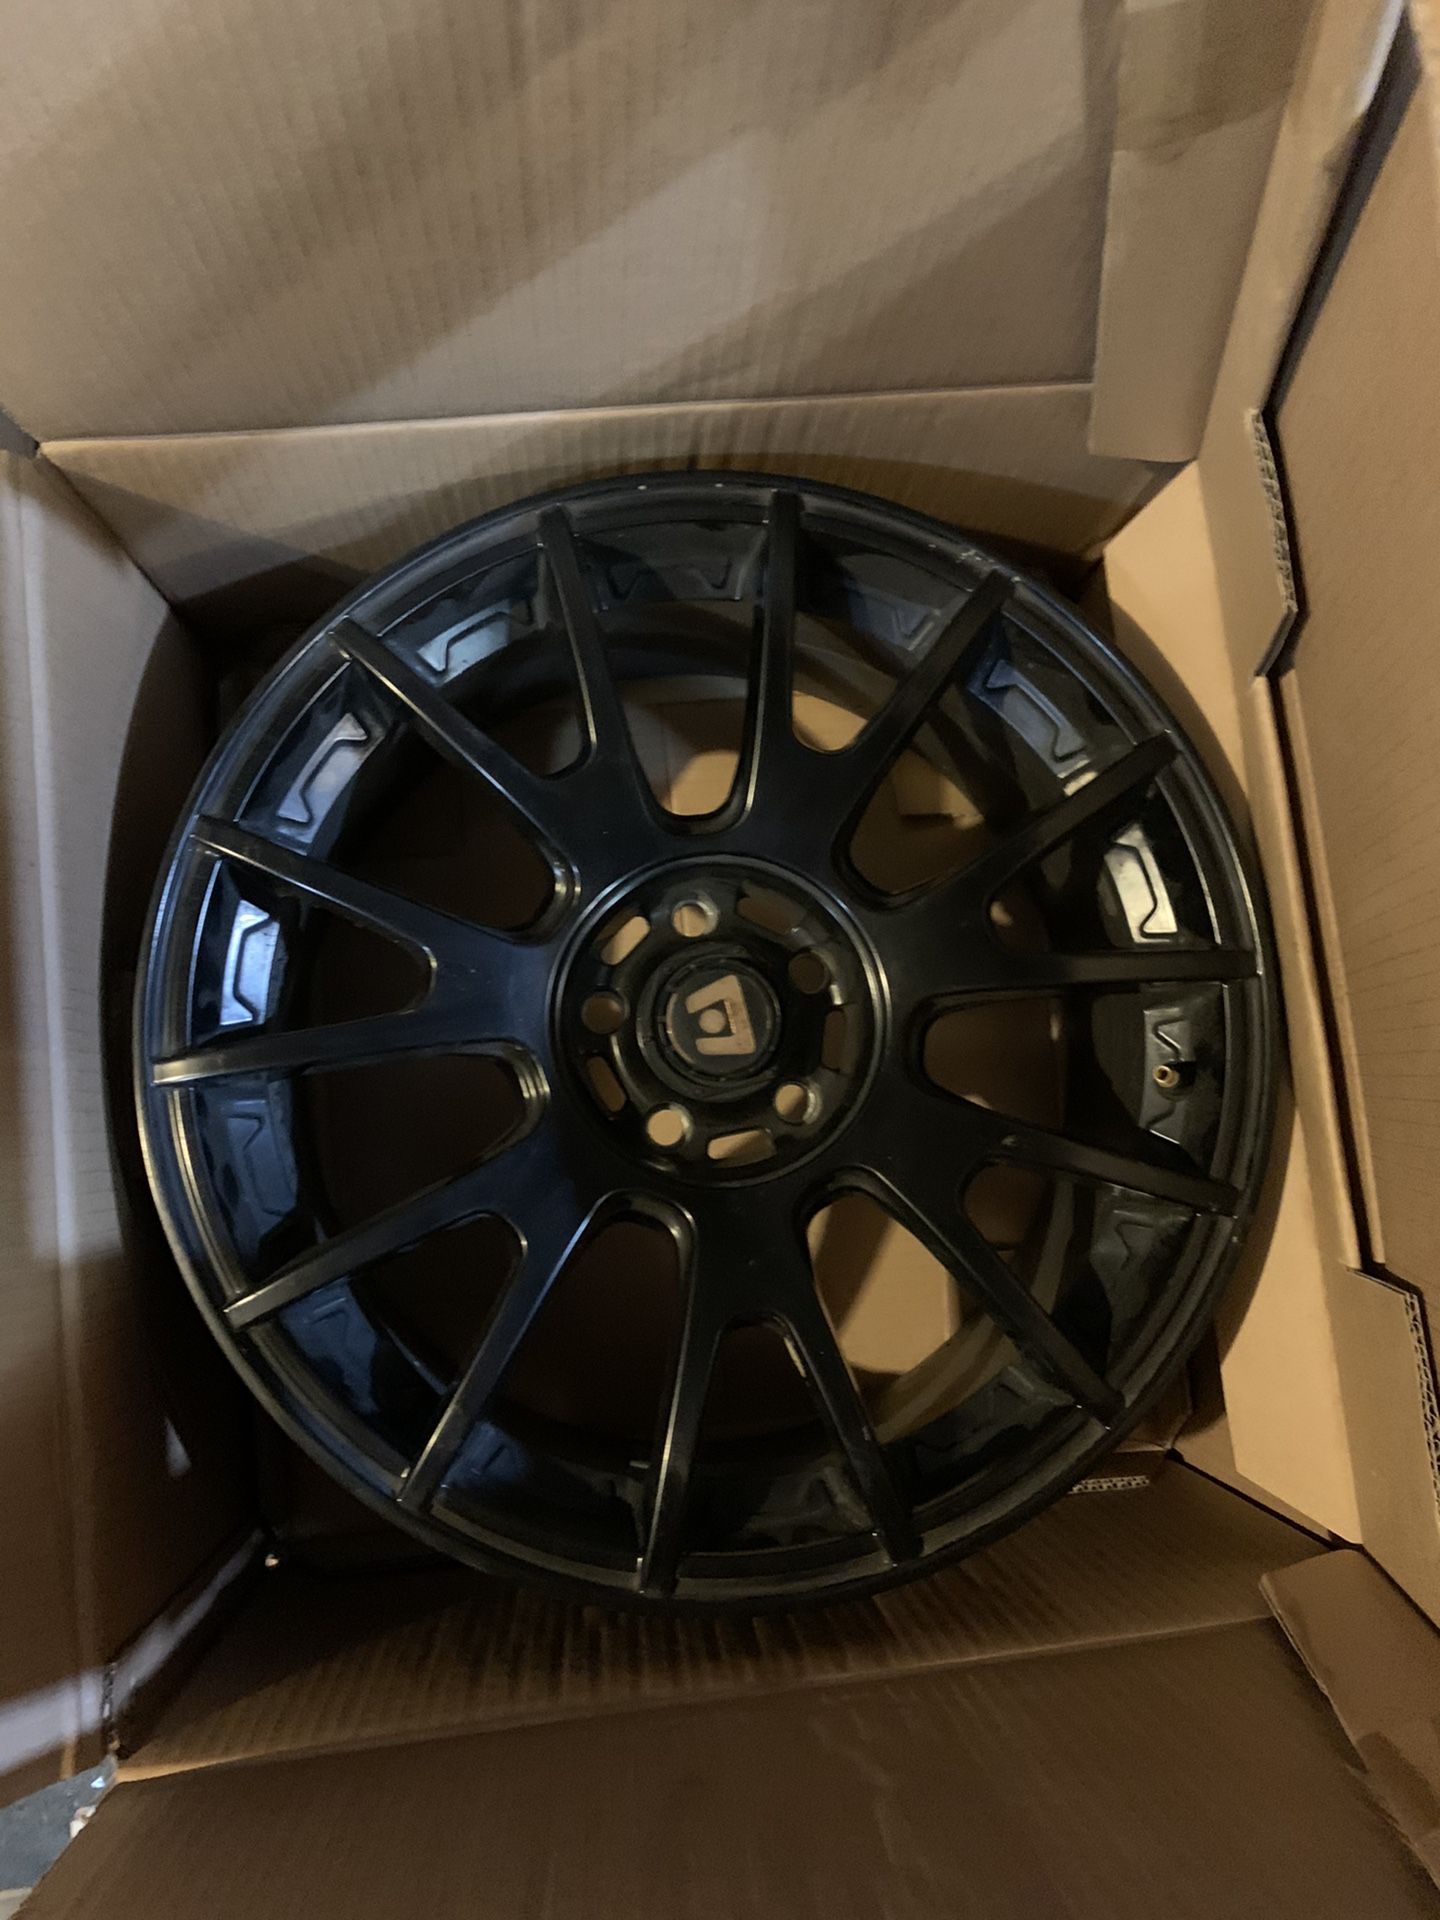 Motegi Racing Wheels, matte black. 17” diameter x 8” width